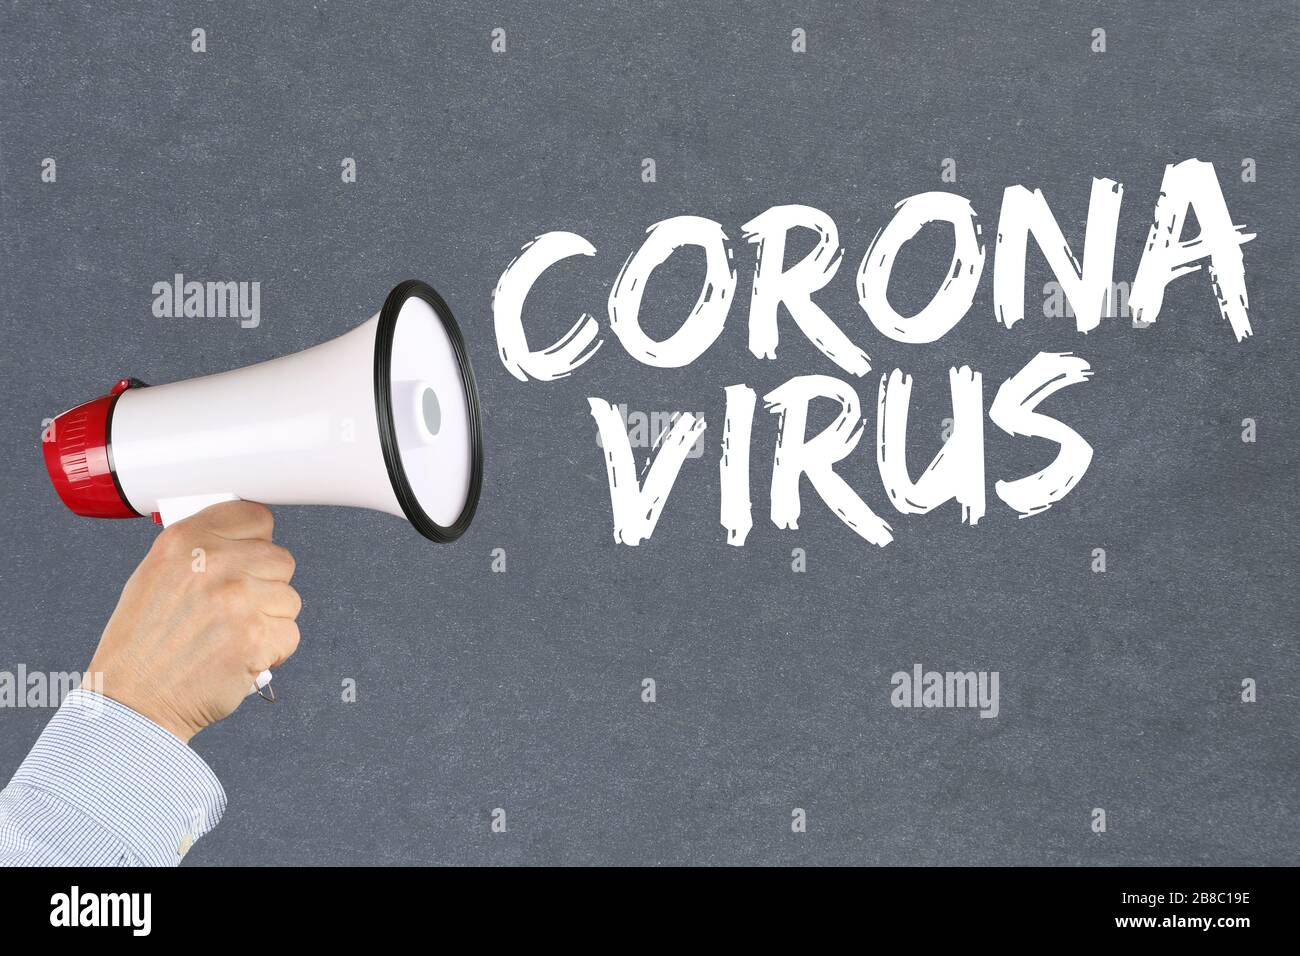 Coronavirus corona virus outbreak disease ill illness hand with megaphone Stock Photo